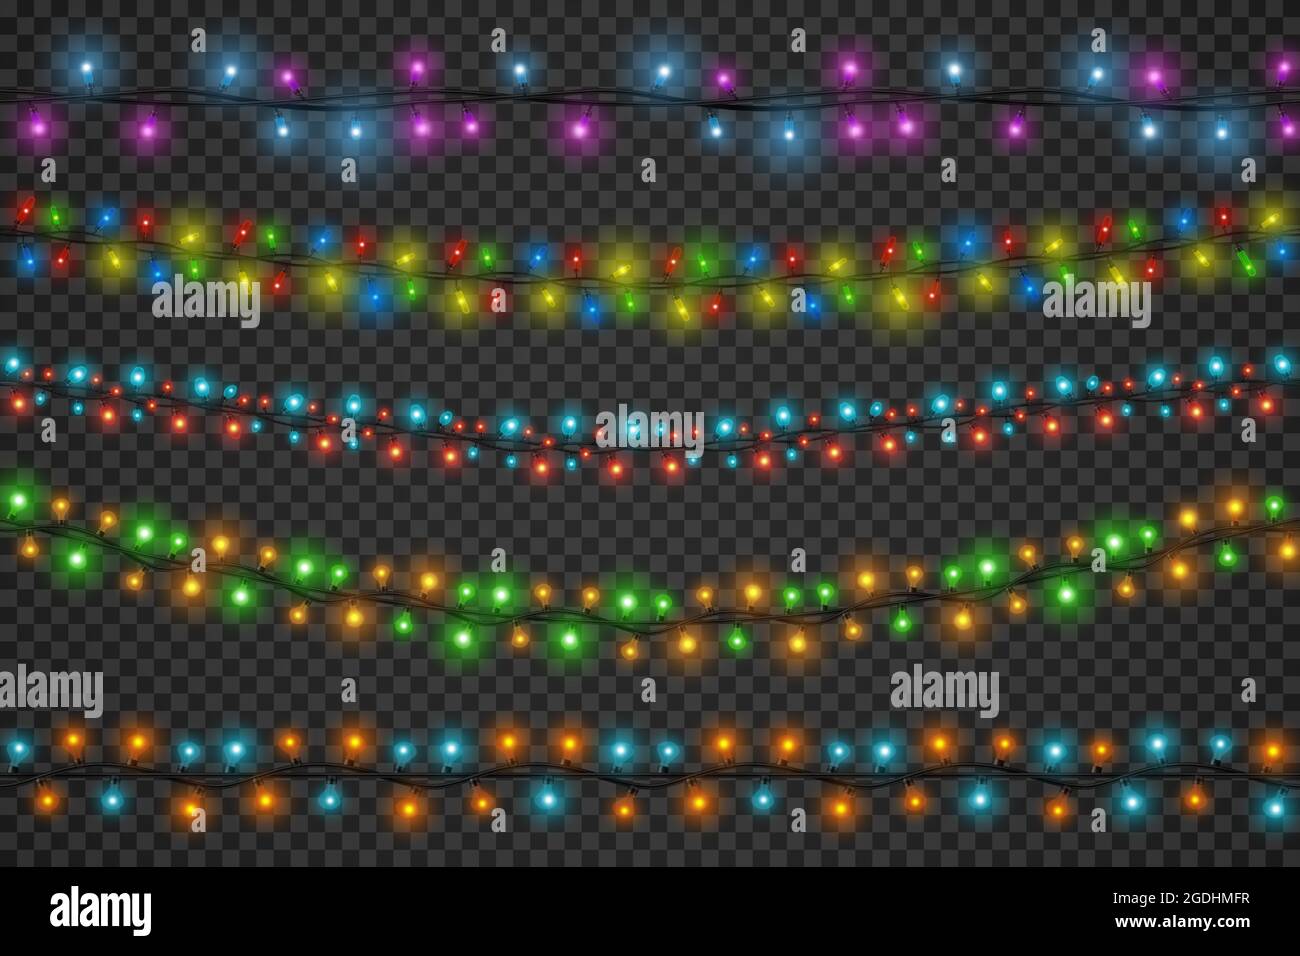 Realistische weihnachten farbigen leuchtenden Licht Girlanden Grenzen. Winterferien, Party oder festliche Dekoration String mit LED-Lichter Vektor-Set Stock Vektor